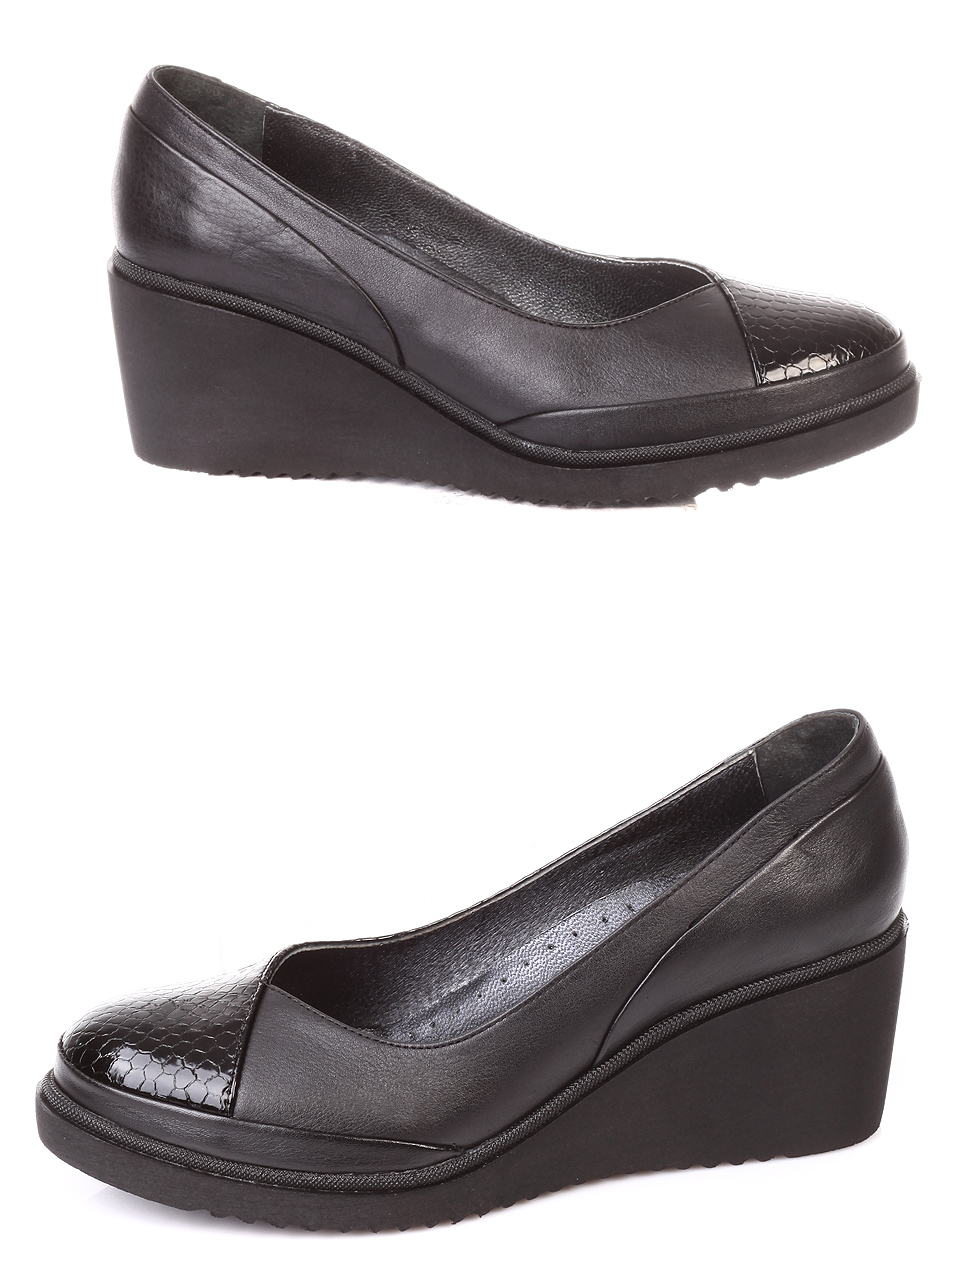 Ежедневни дамски обувки от естествена кожа 3AT-181079 black